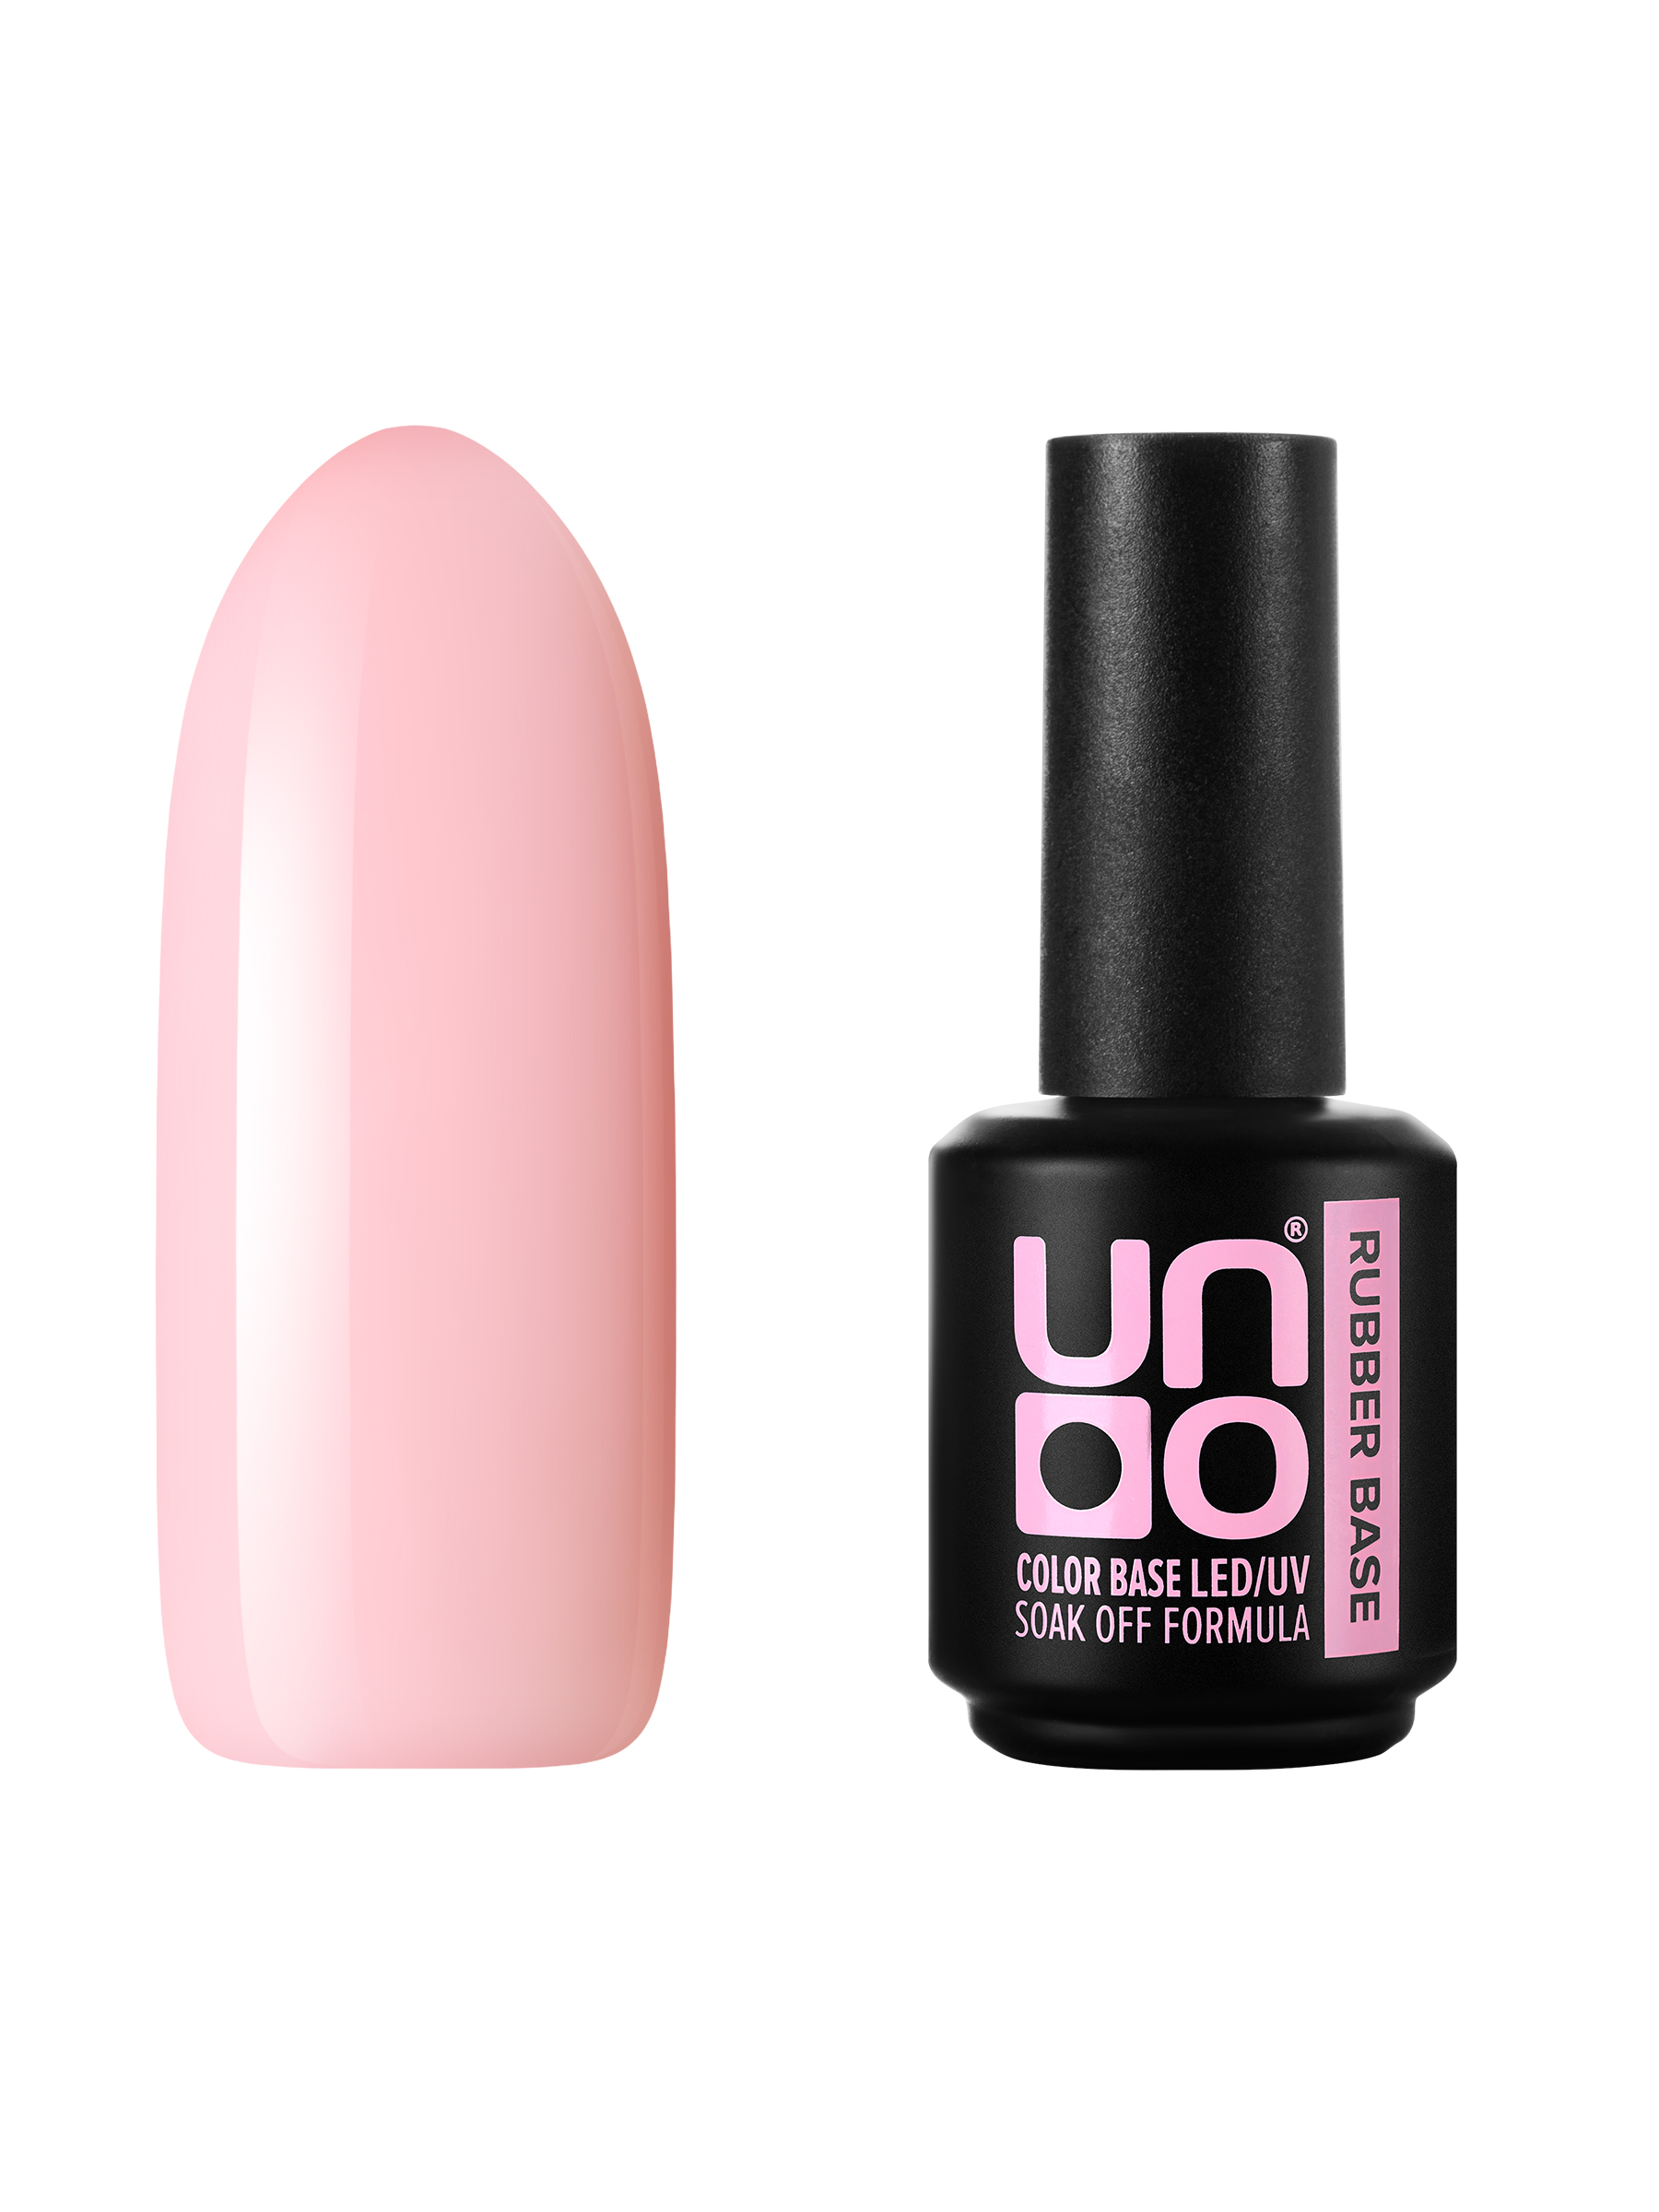 Камуфлирующая база для ногтей UNO цветная мягкая основа под гель-лак, нюд, розовая, 12 г мы сестры